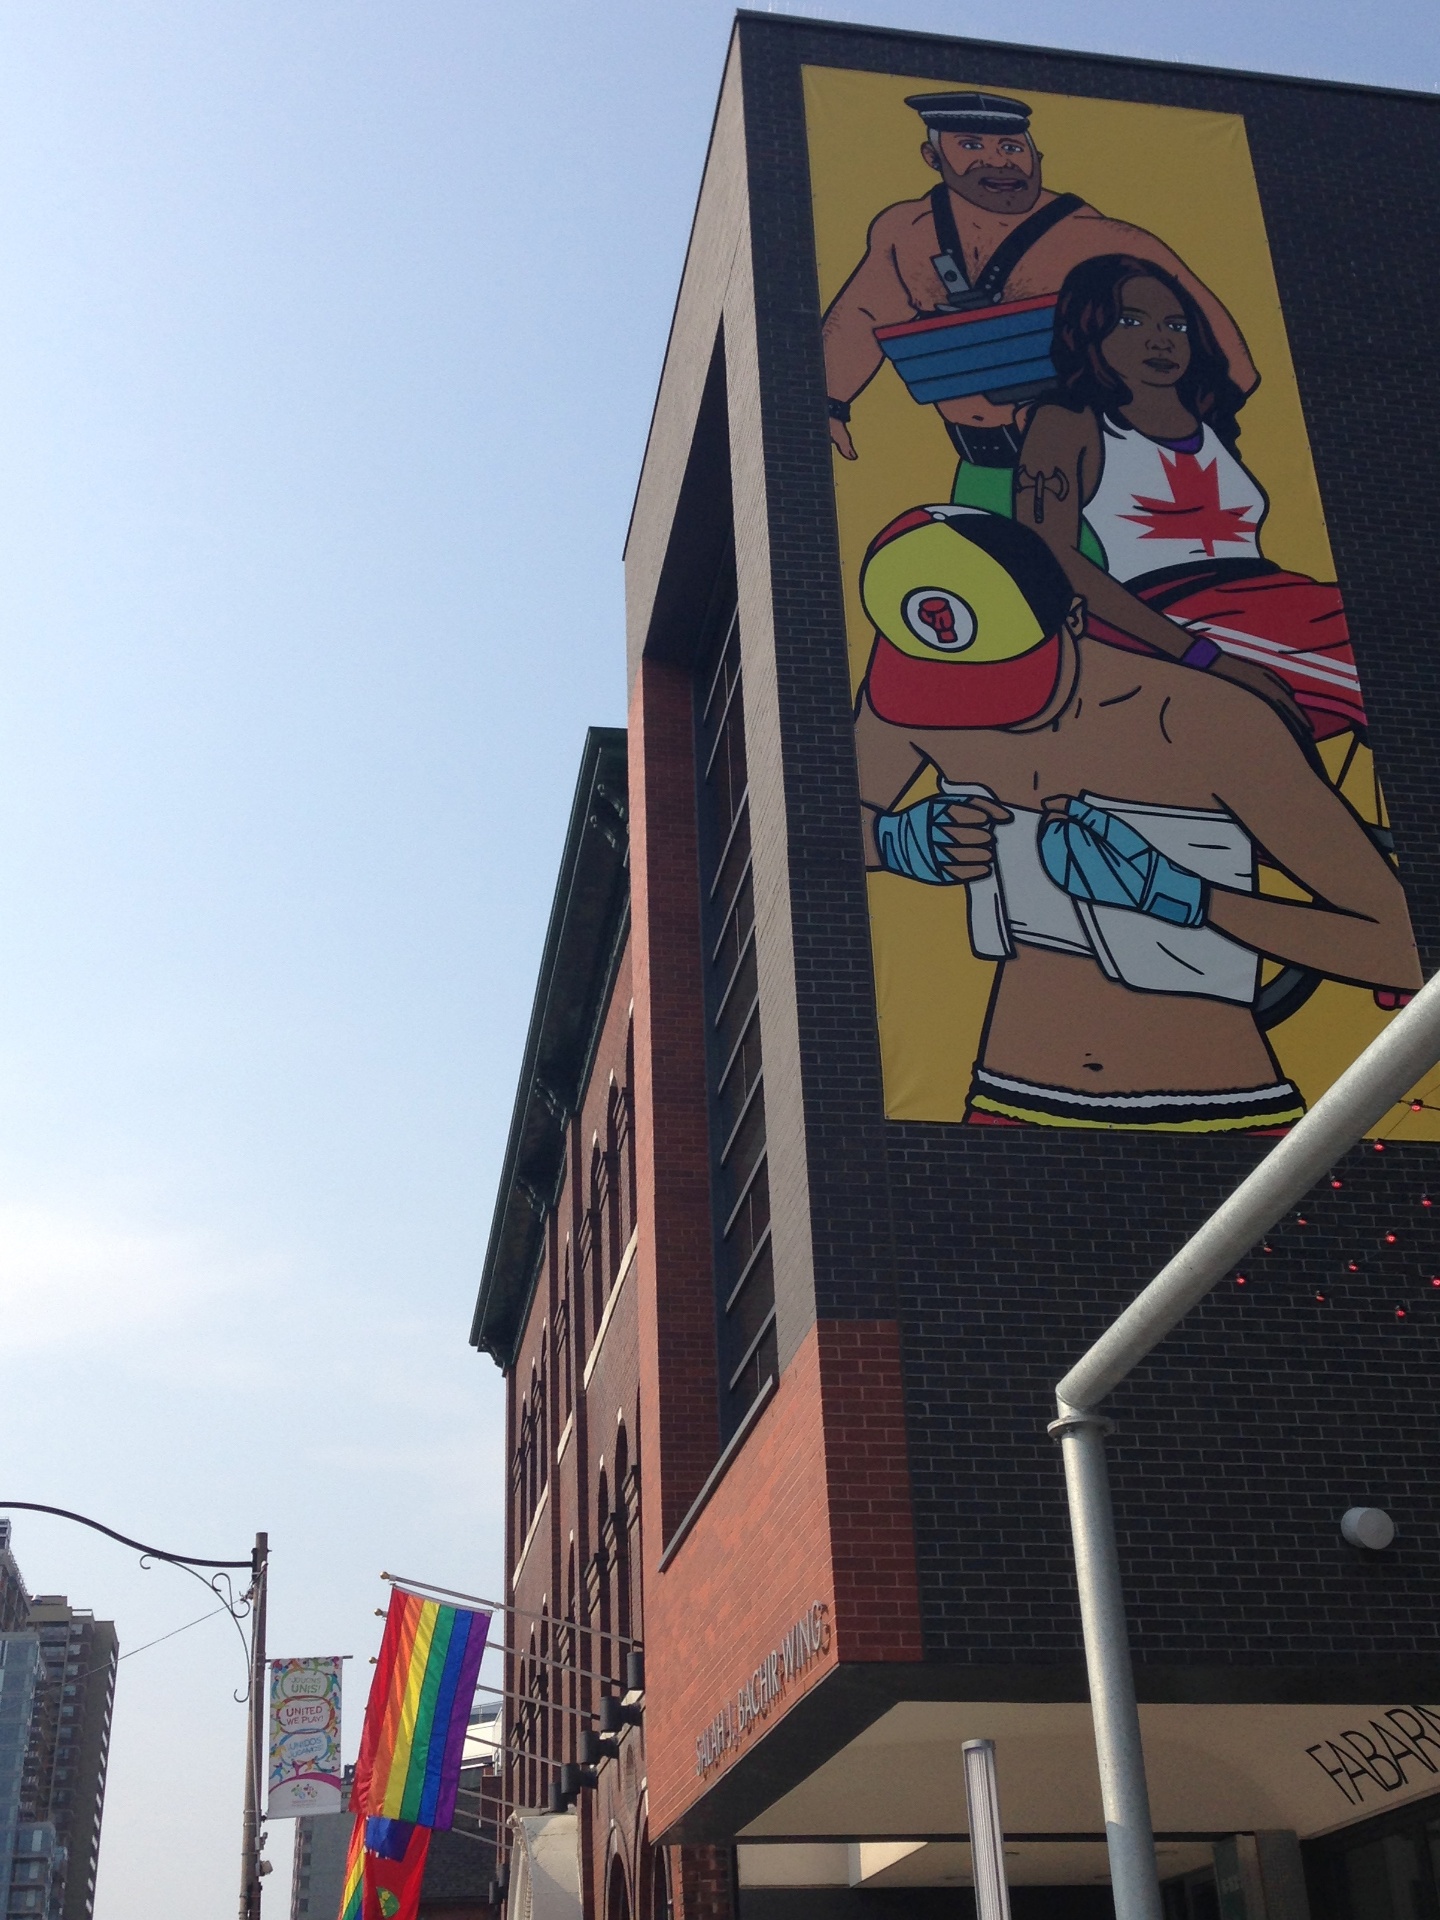 Pride House, casa organizada pelos gays para celebrar o Pan, tem imagens do lado de fora com desenho de atletas com trajes típicos LGBT